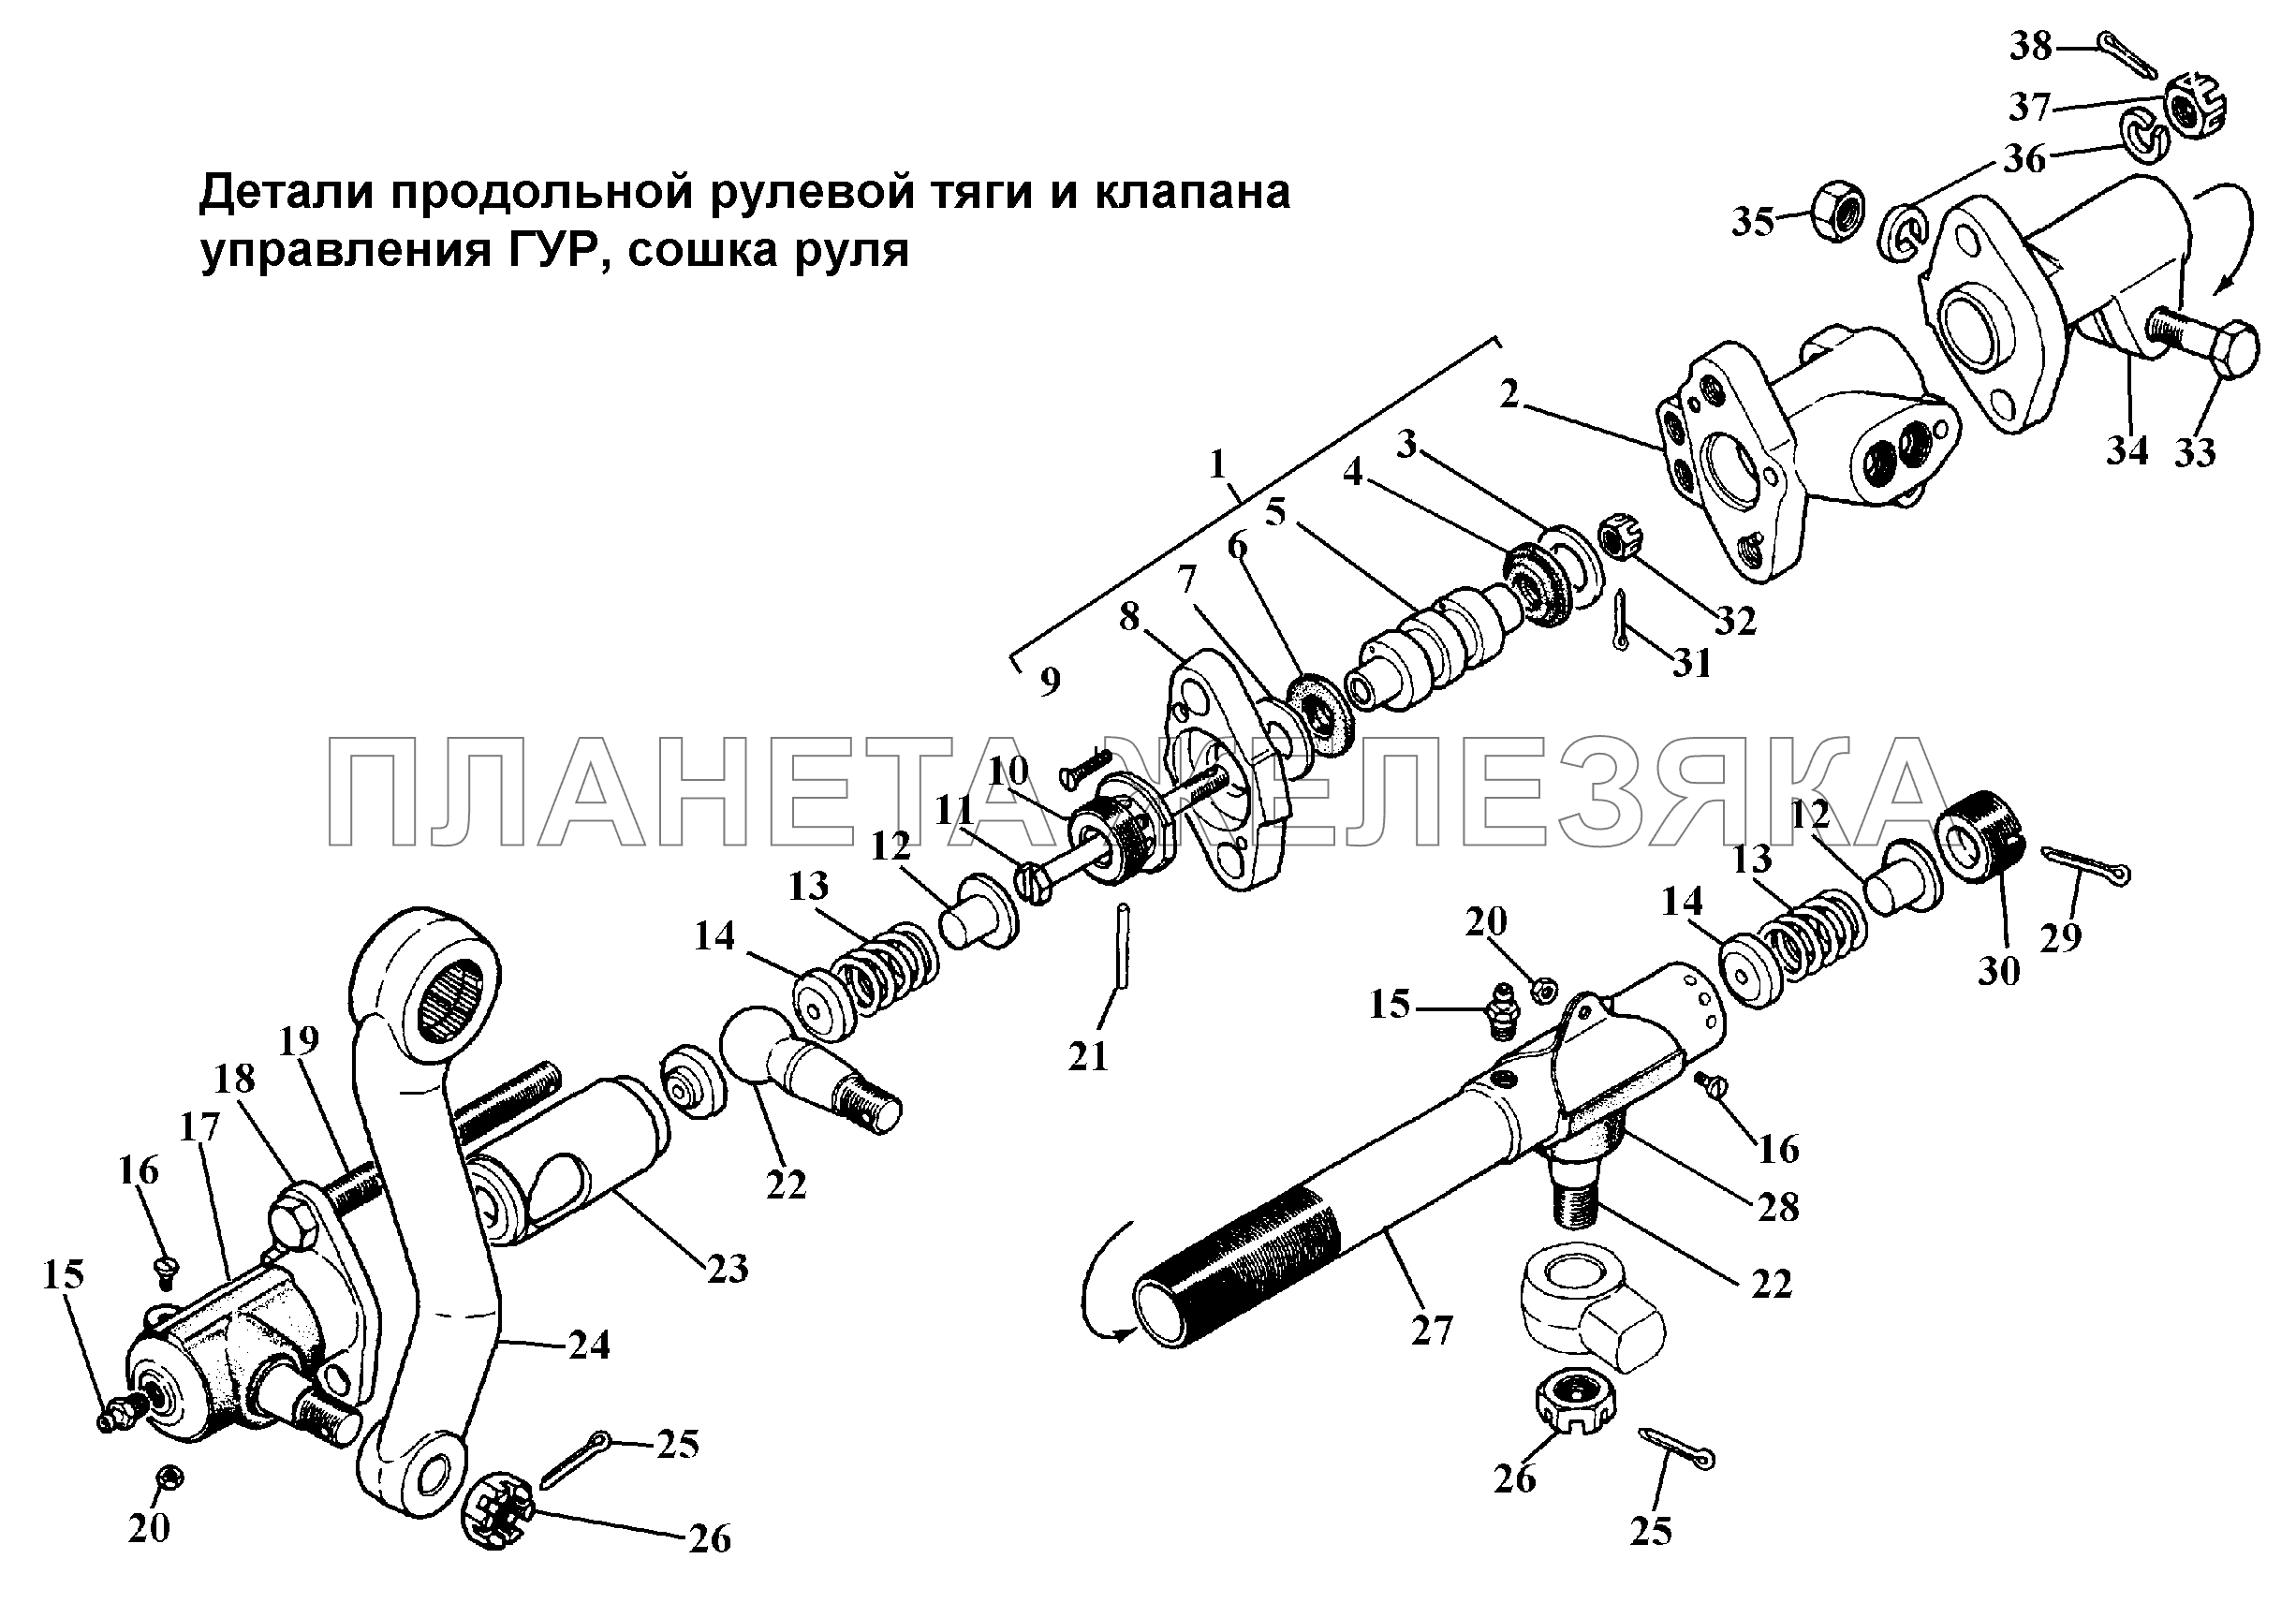 Детали продольной рулевой тяги и клапана управления ГУР, сошка руля ГАЗ-3308